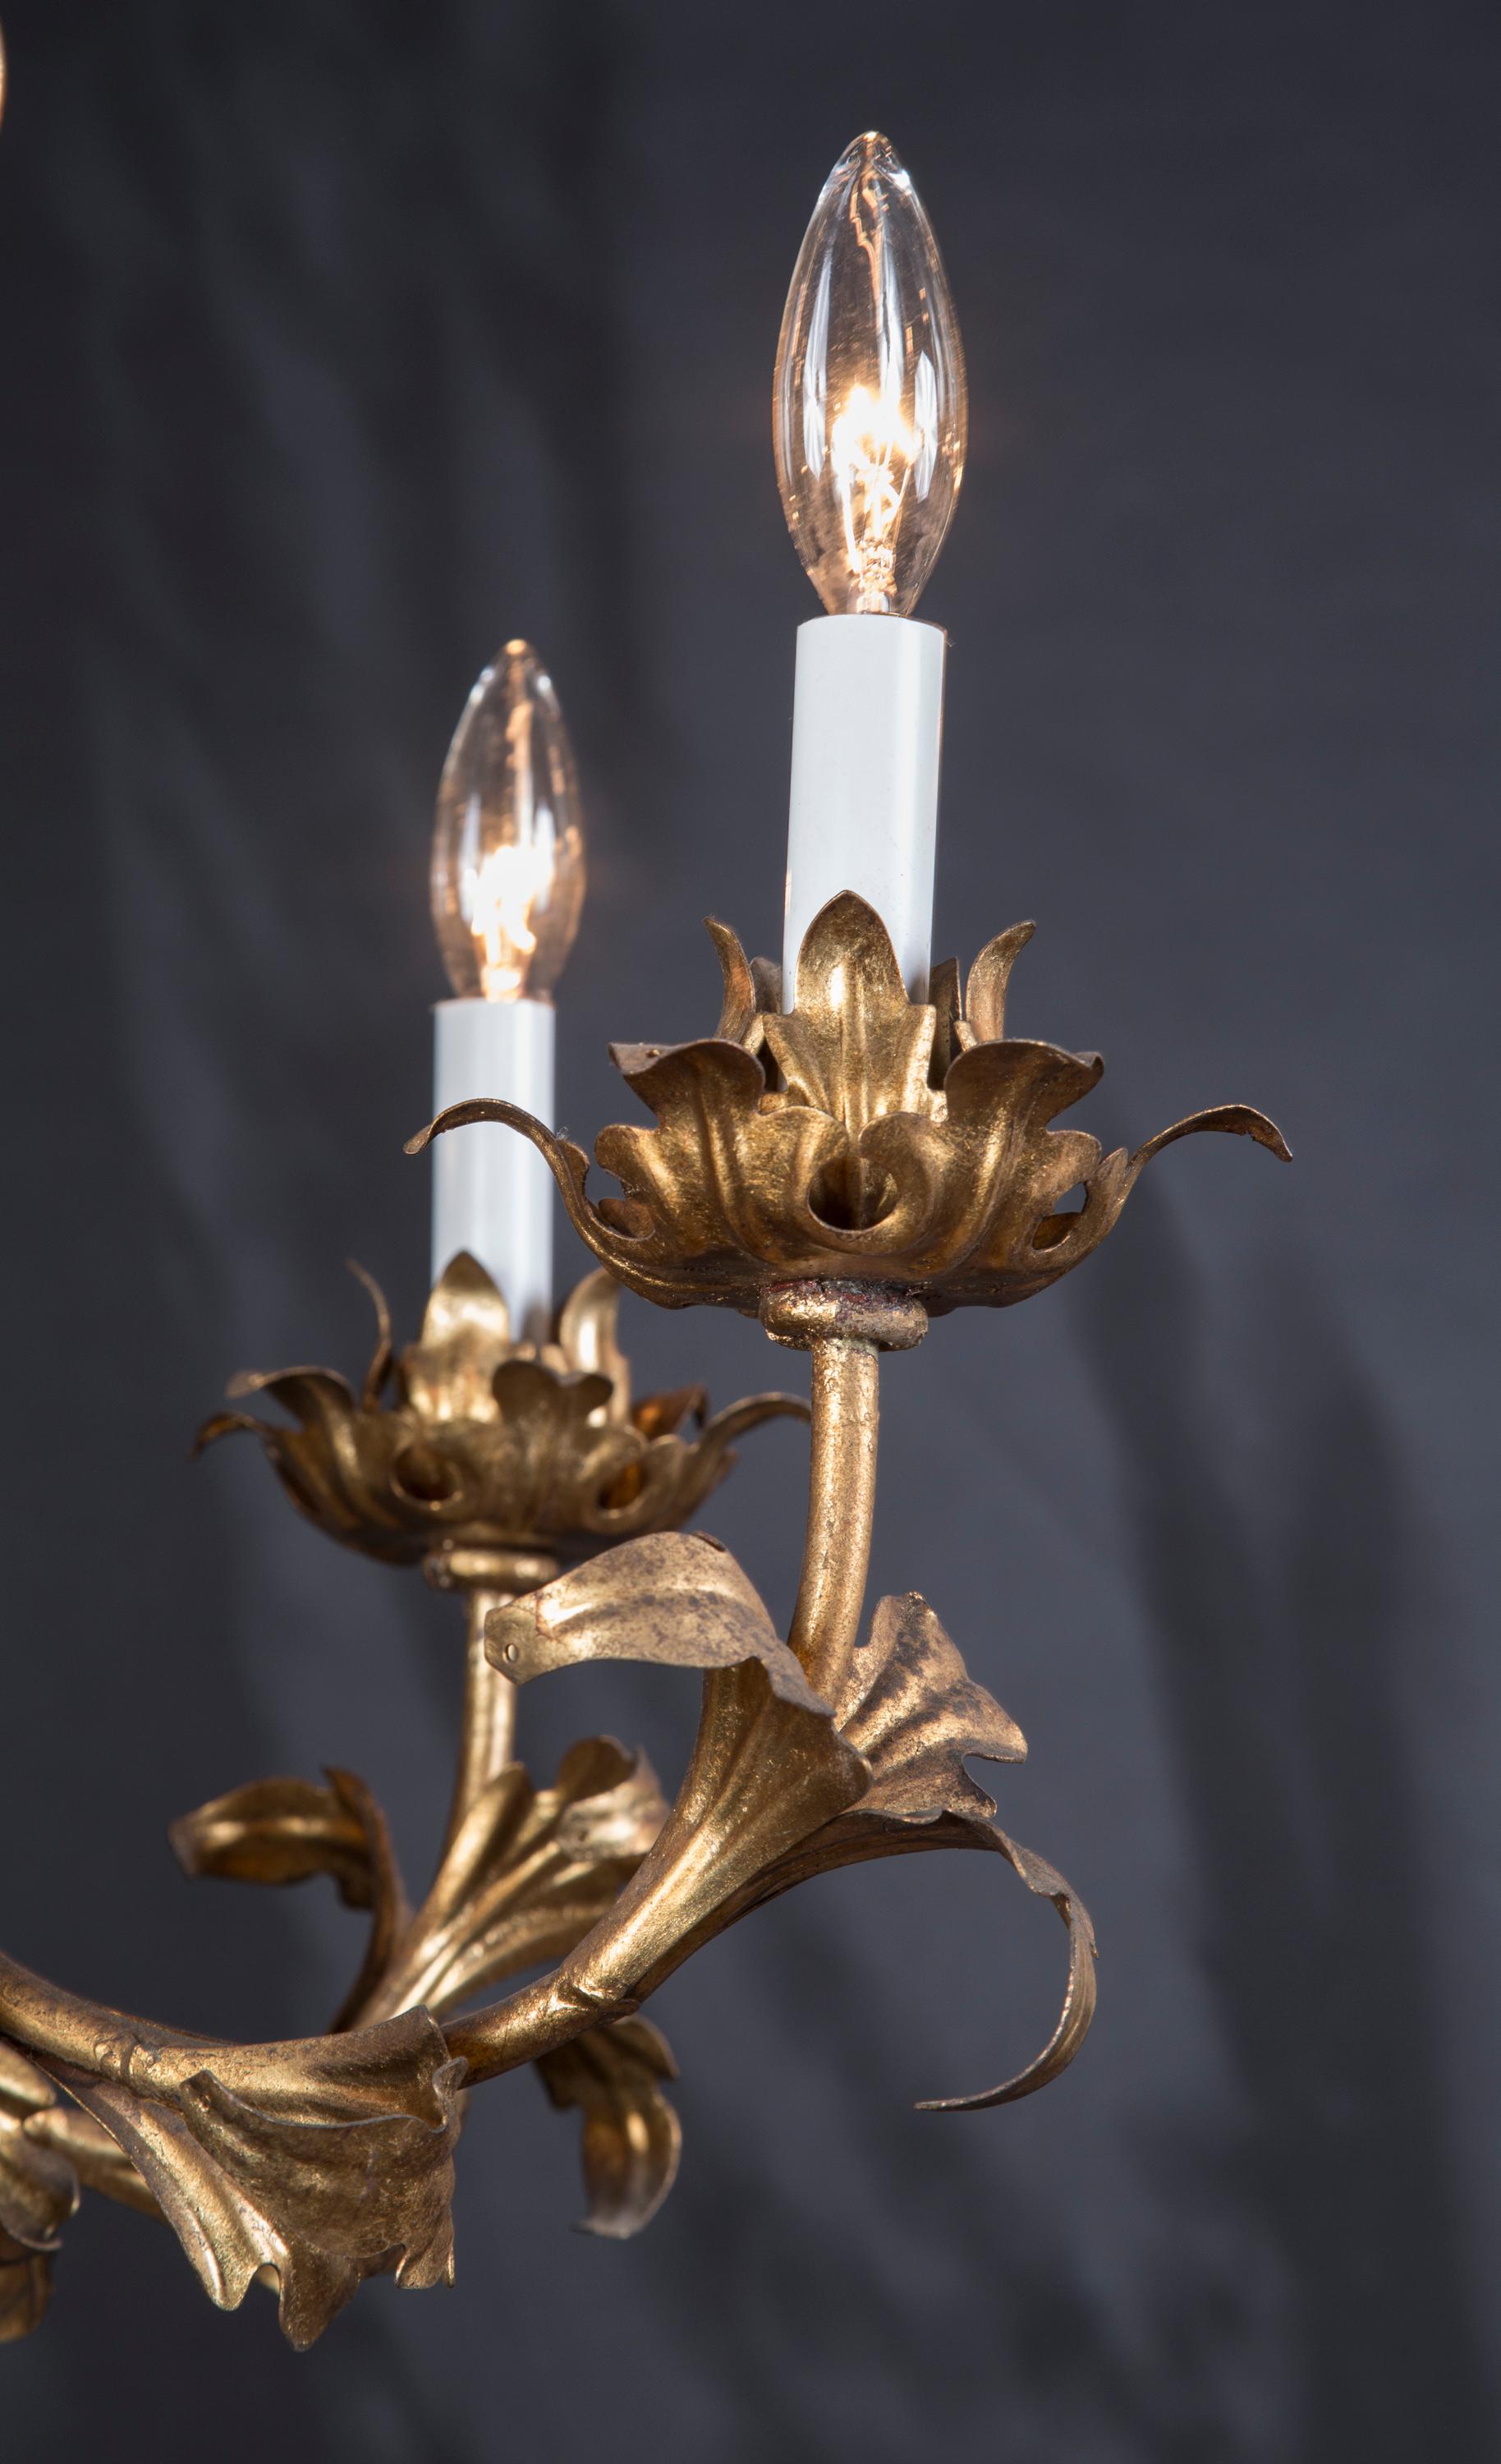 Ce magnifique lustre Louis XV est en tole doré, plaqué or sur étain, et rejoint notre collection en provenance d'Italie. La pièce date du milieu du 20e siècle, vers 1950, et présente une forme unique avec un motif feuillu sur l'ensemble de la pièce.